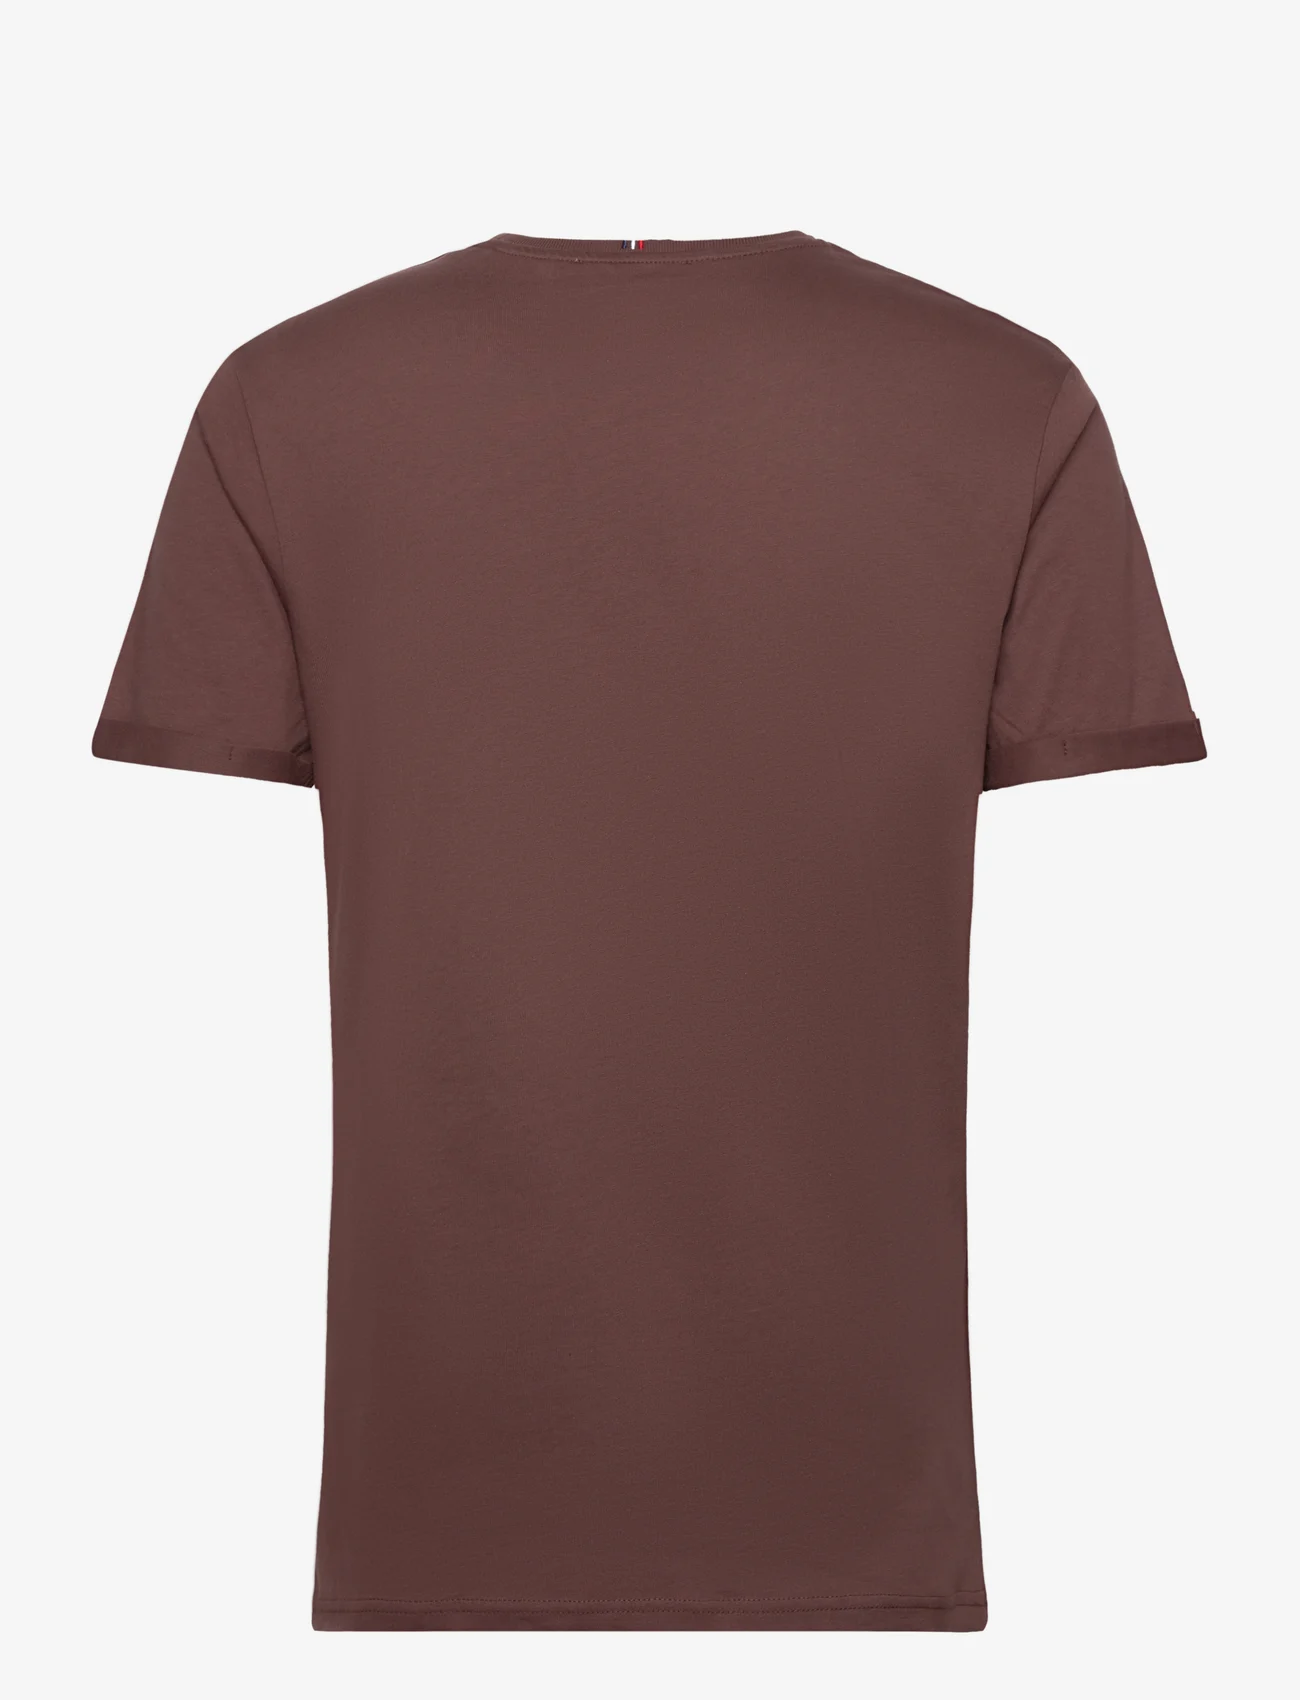 Les Deux - Nørregaard T-Shirt - Seasonal - najniższe ceny - ebony brown/orange - 1